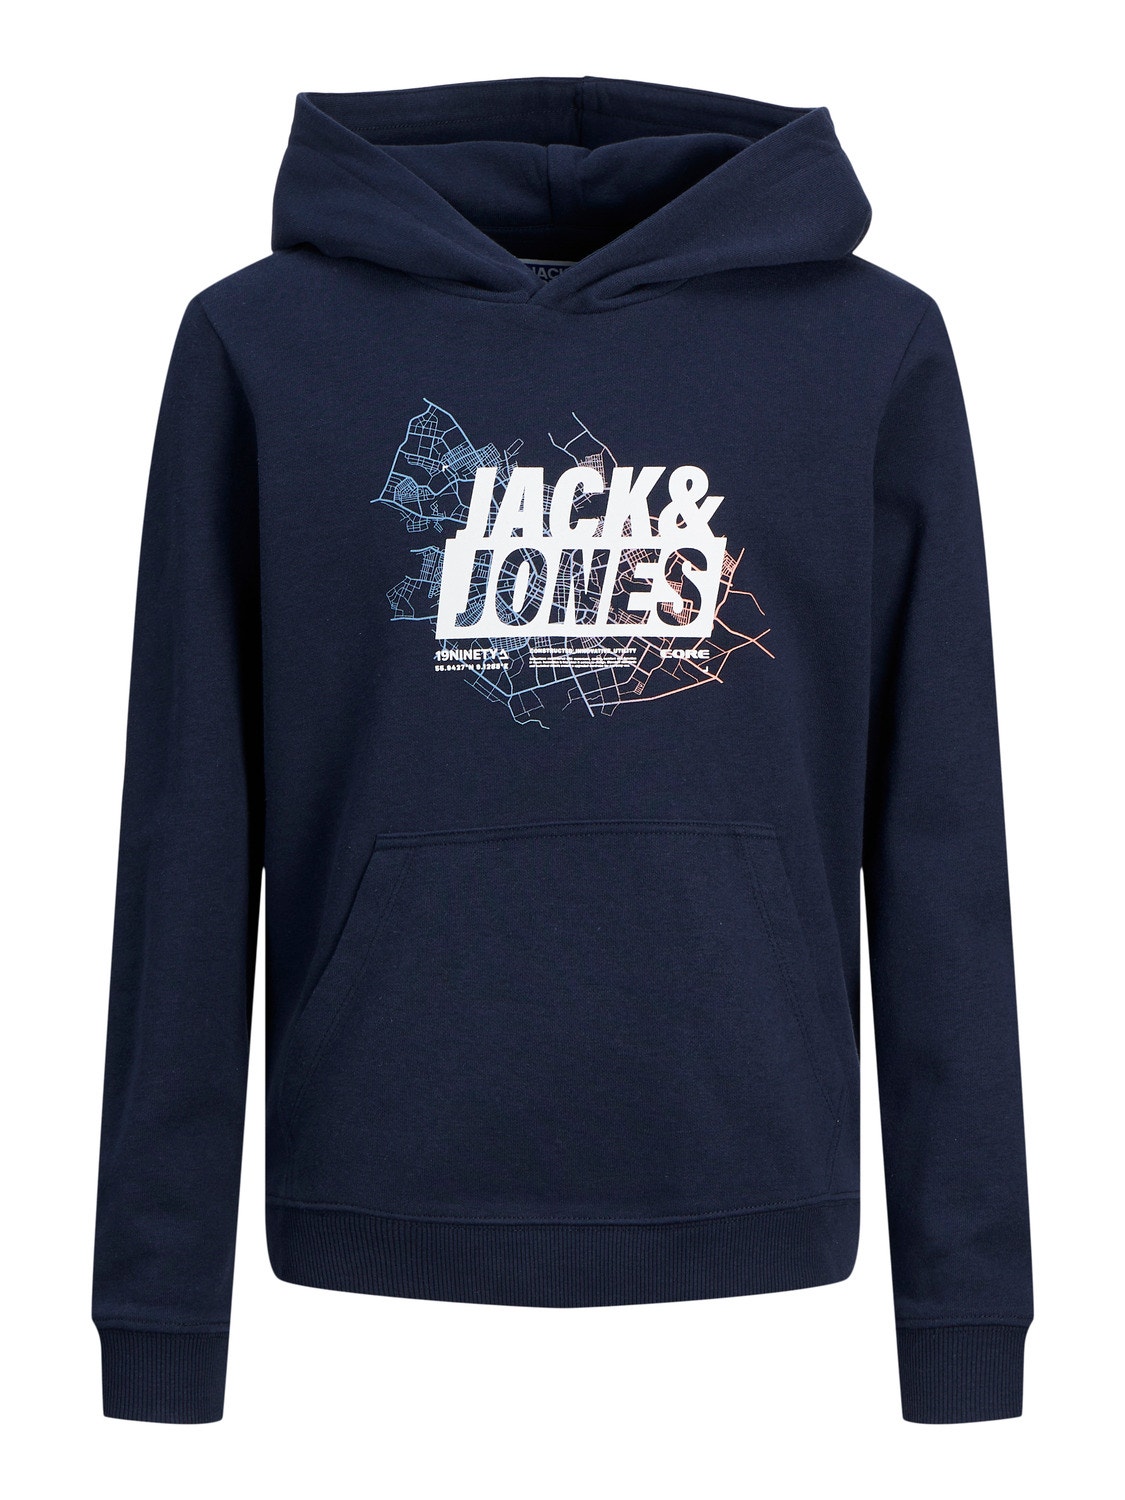 Jack & Jones Sudadera con capucha Estampado Para chicos -Navy Blazer - 12253990